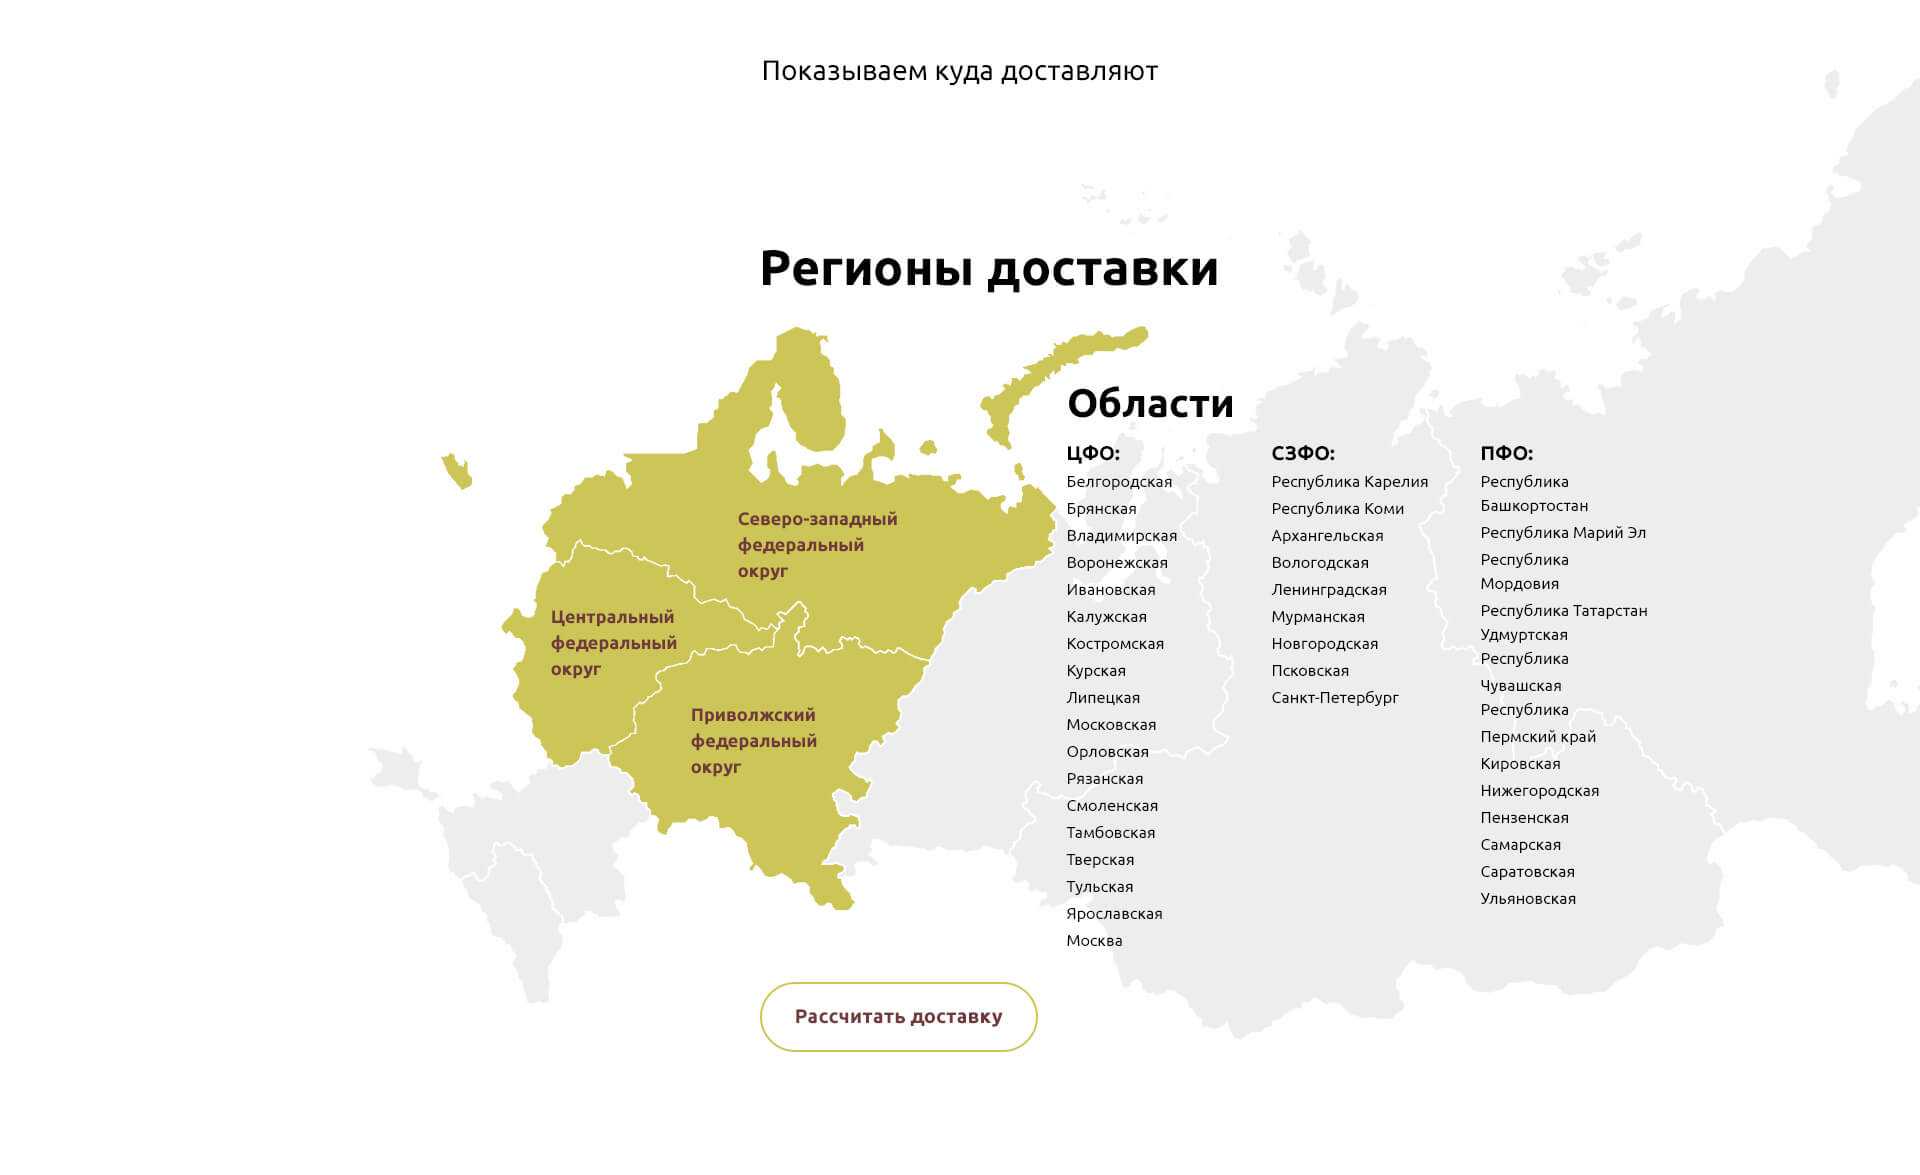 Видное какой регион россии